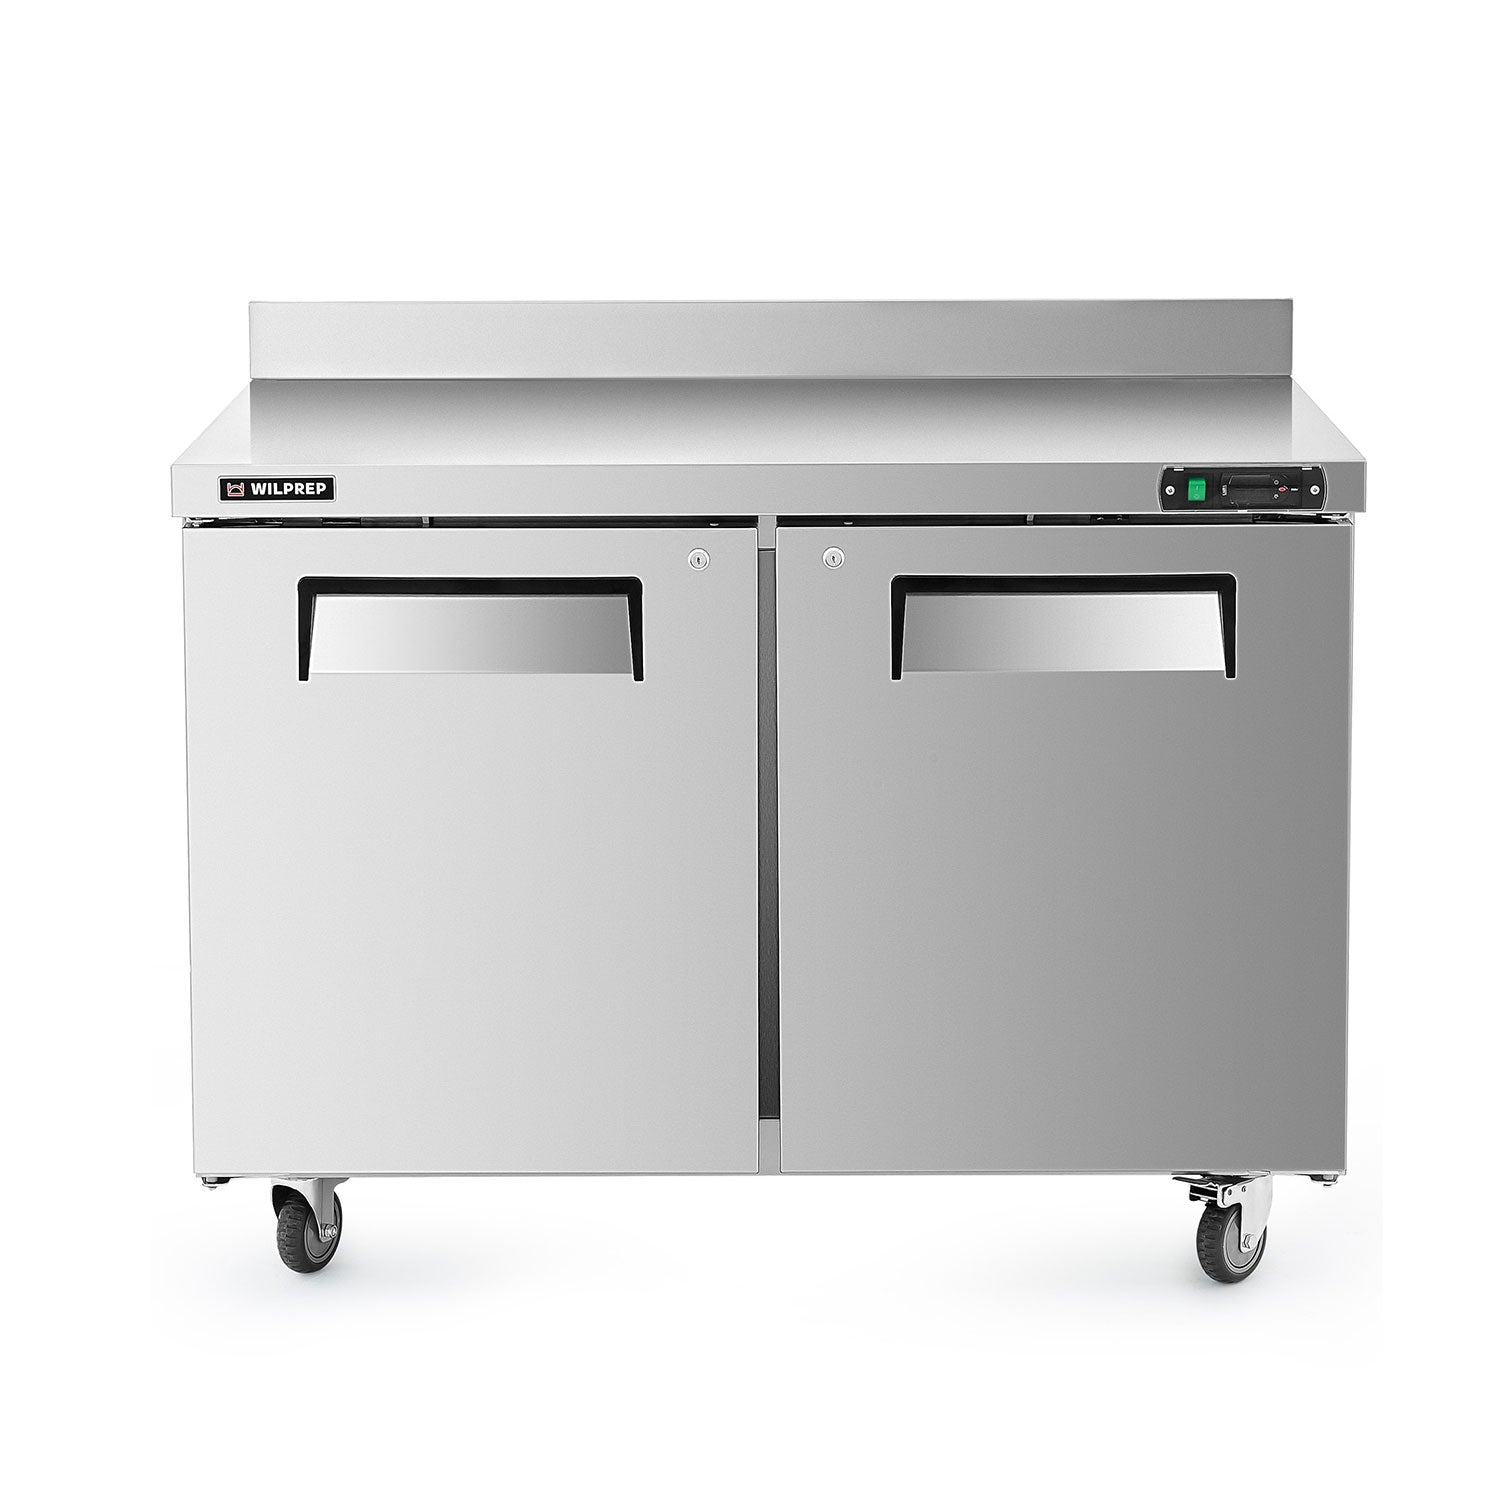 Wilprep 48-inch Under-Counter Worktop Refrigerator for Sale